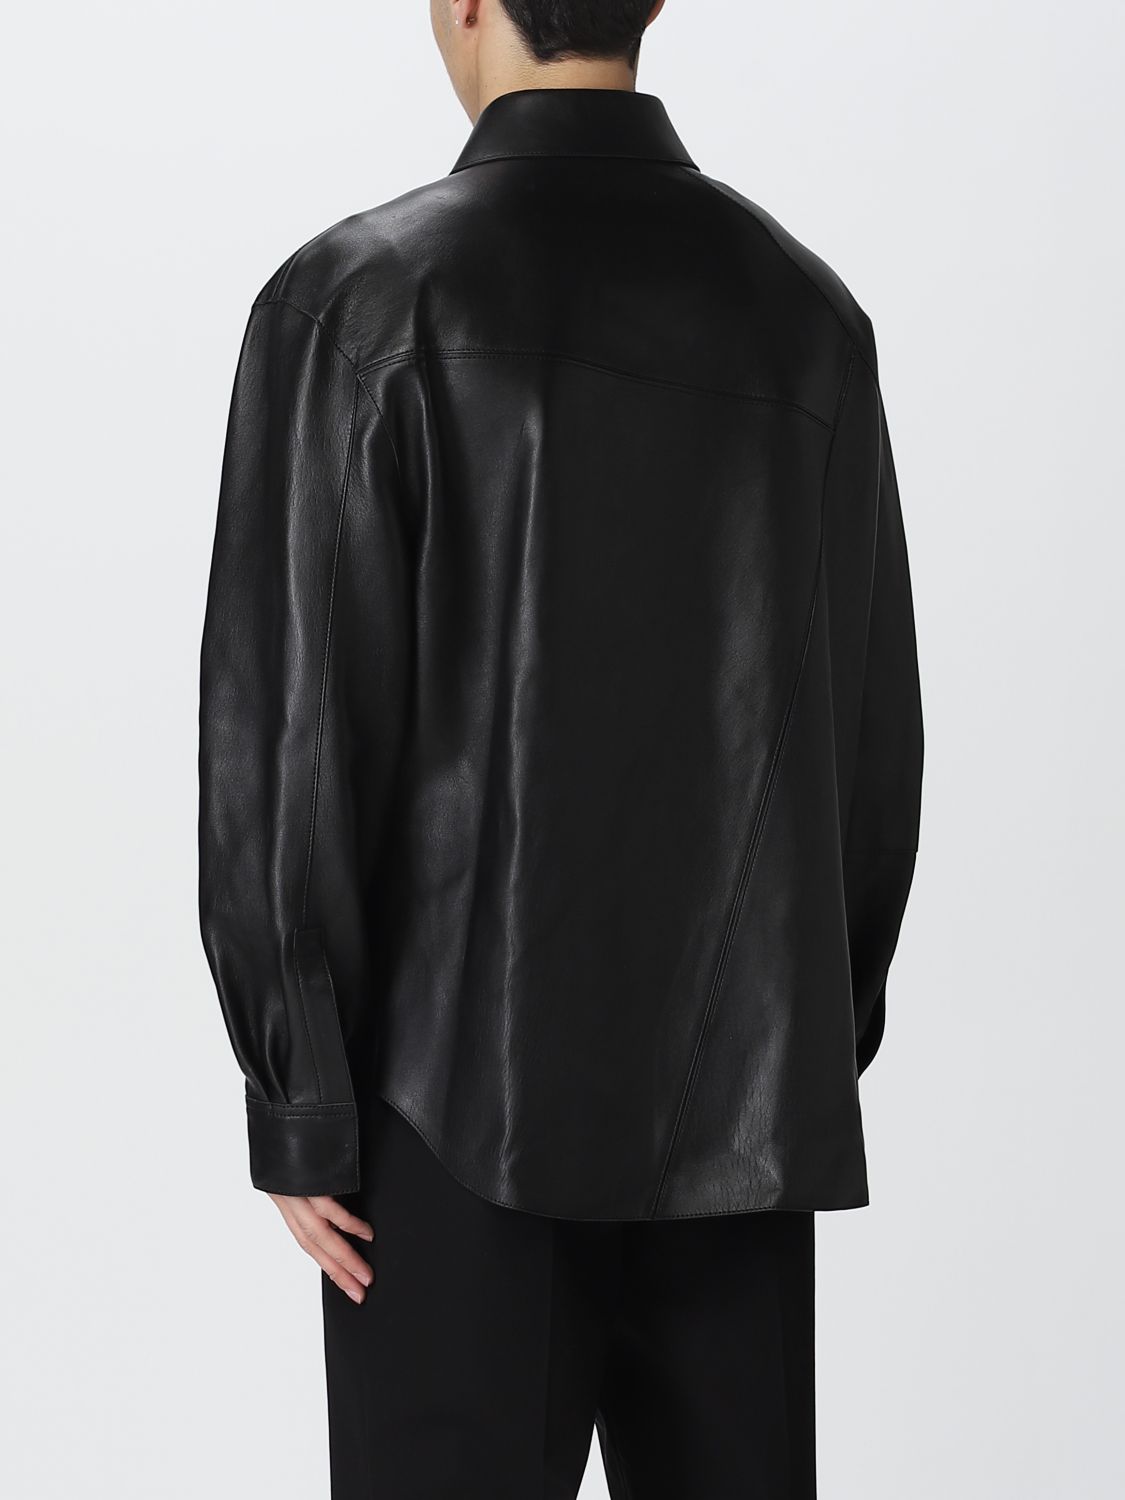 Shirt Loewe: Loewe shirt for man black 3